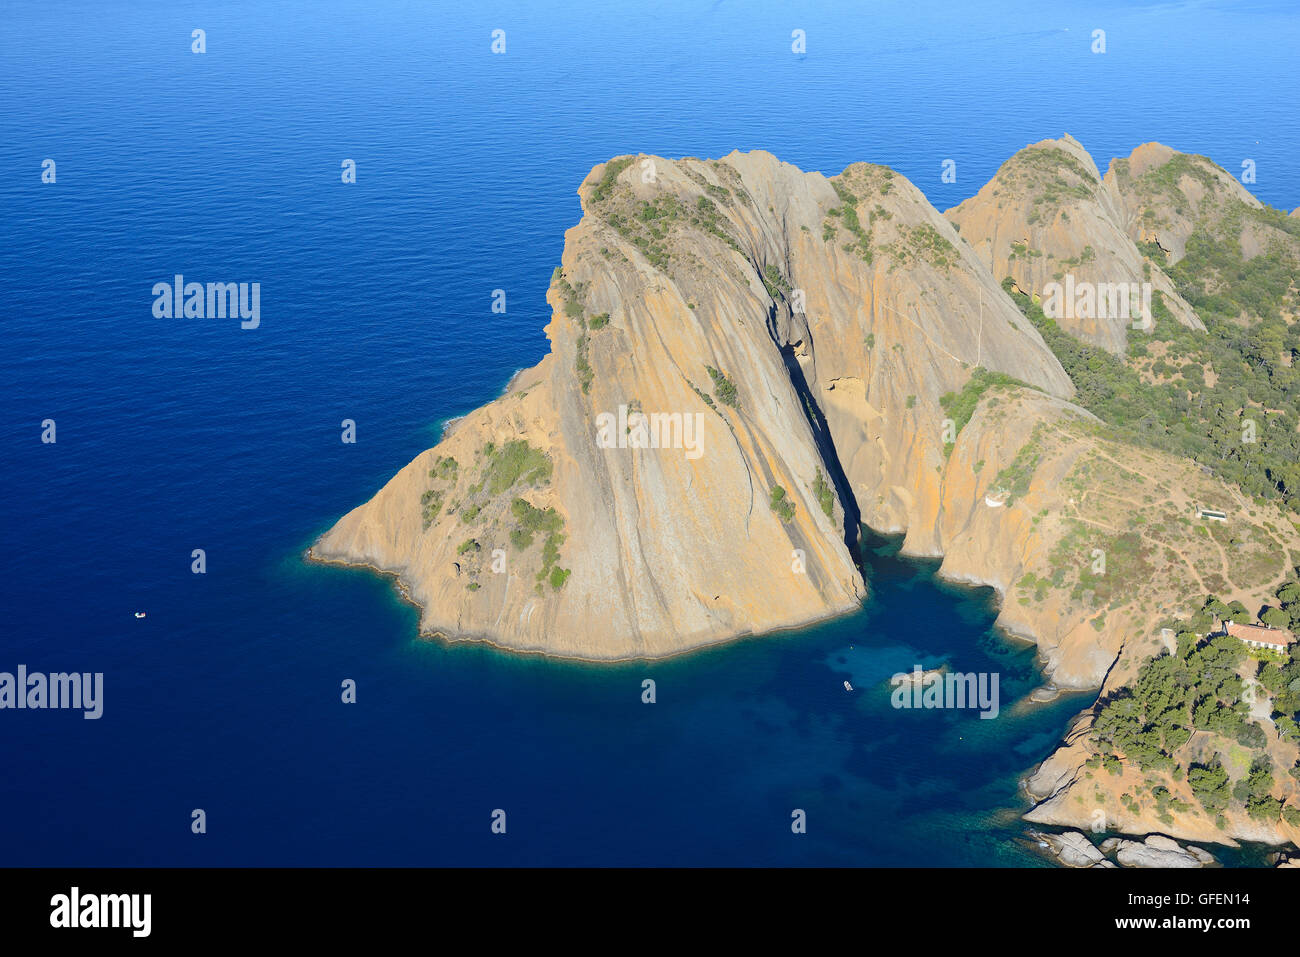 VISTA AEREA. Il Bec de l'Aigle, un promontorio roccioso che domina il Mar Mediterraneo dalla sua altezza di 155 metri. La Ciotat, Provenza, Francia. Foto Stock